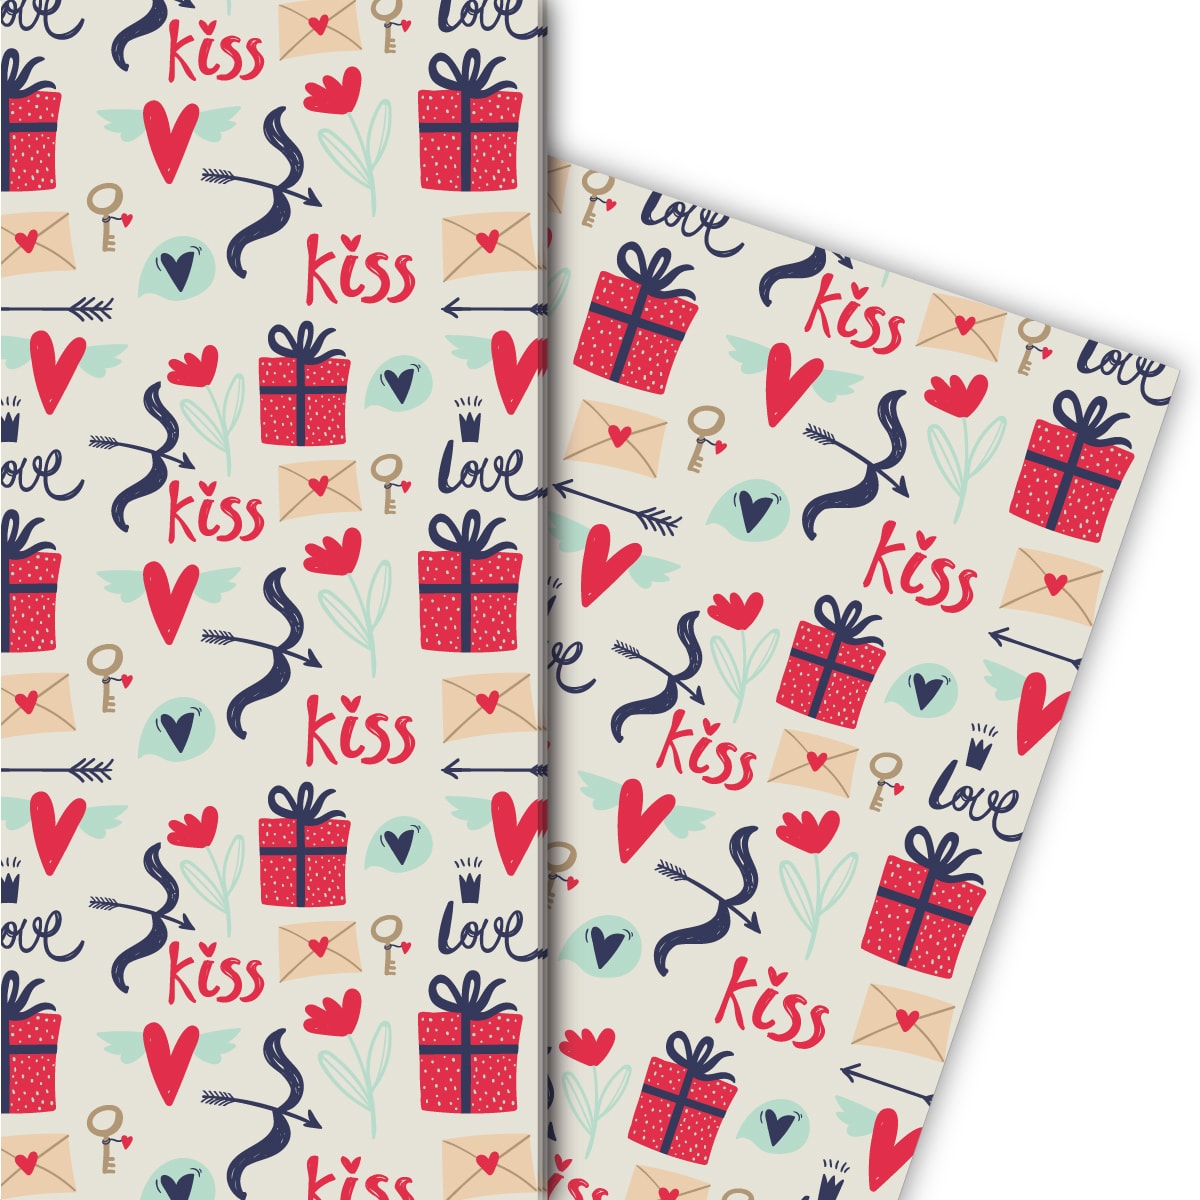 Kartenkaufrausch: Romantisches Liebes Geschenkpapier mit aus unserer Liebes Papeterie in weiß